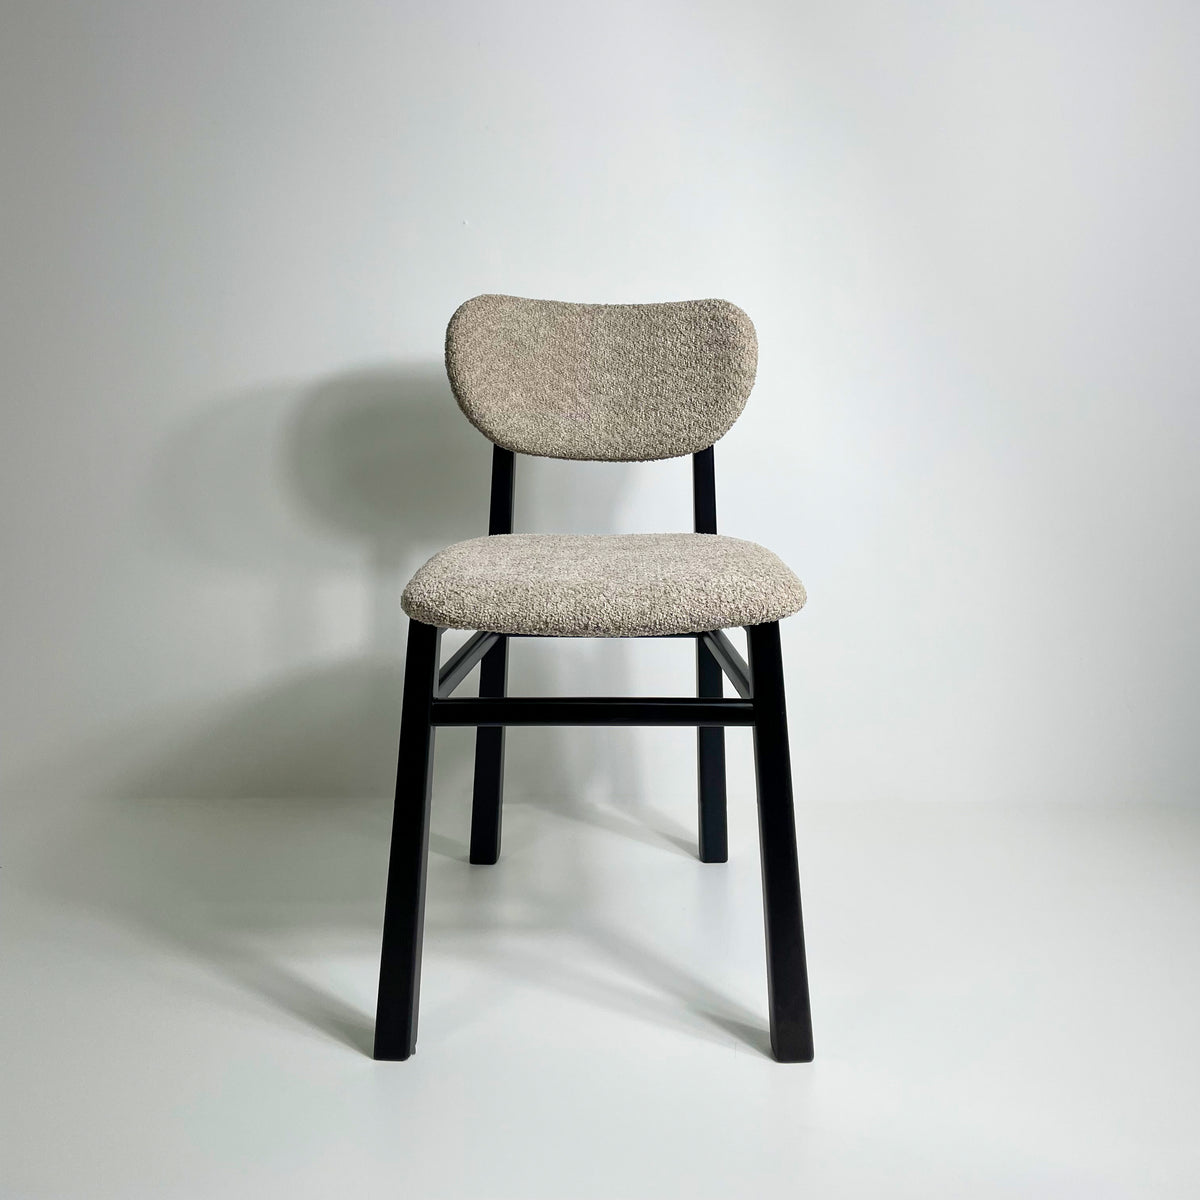 Cadeira sinuosa ebanizada - estofado boucle marrom sheep